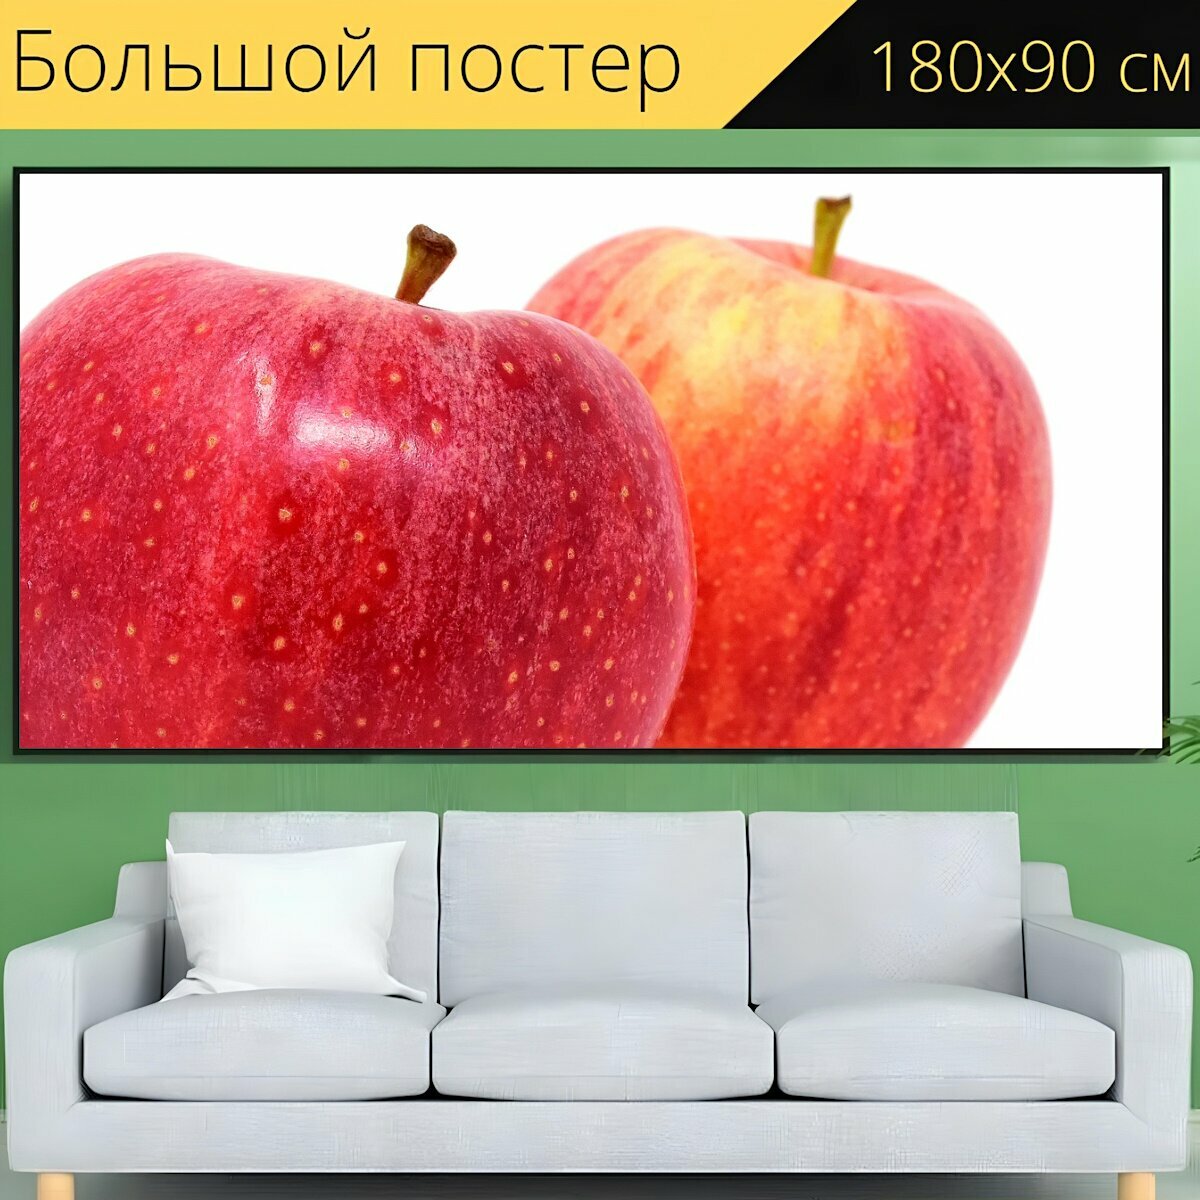 Большой постер "Яблоко, фрукты, красное яблоко" 180 x 90 см. для интерьера